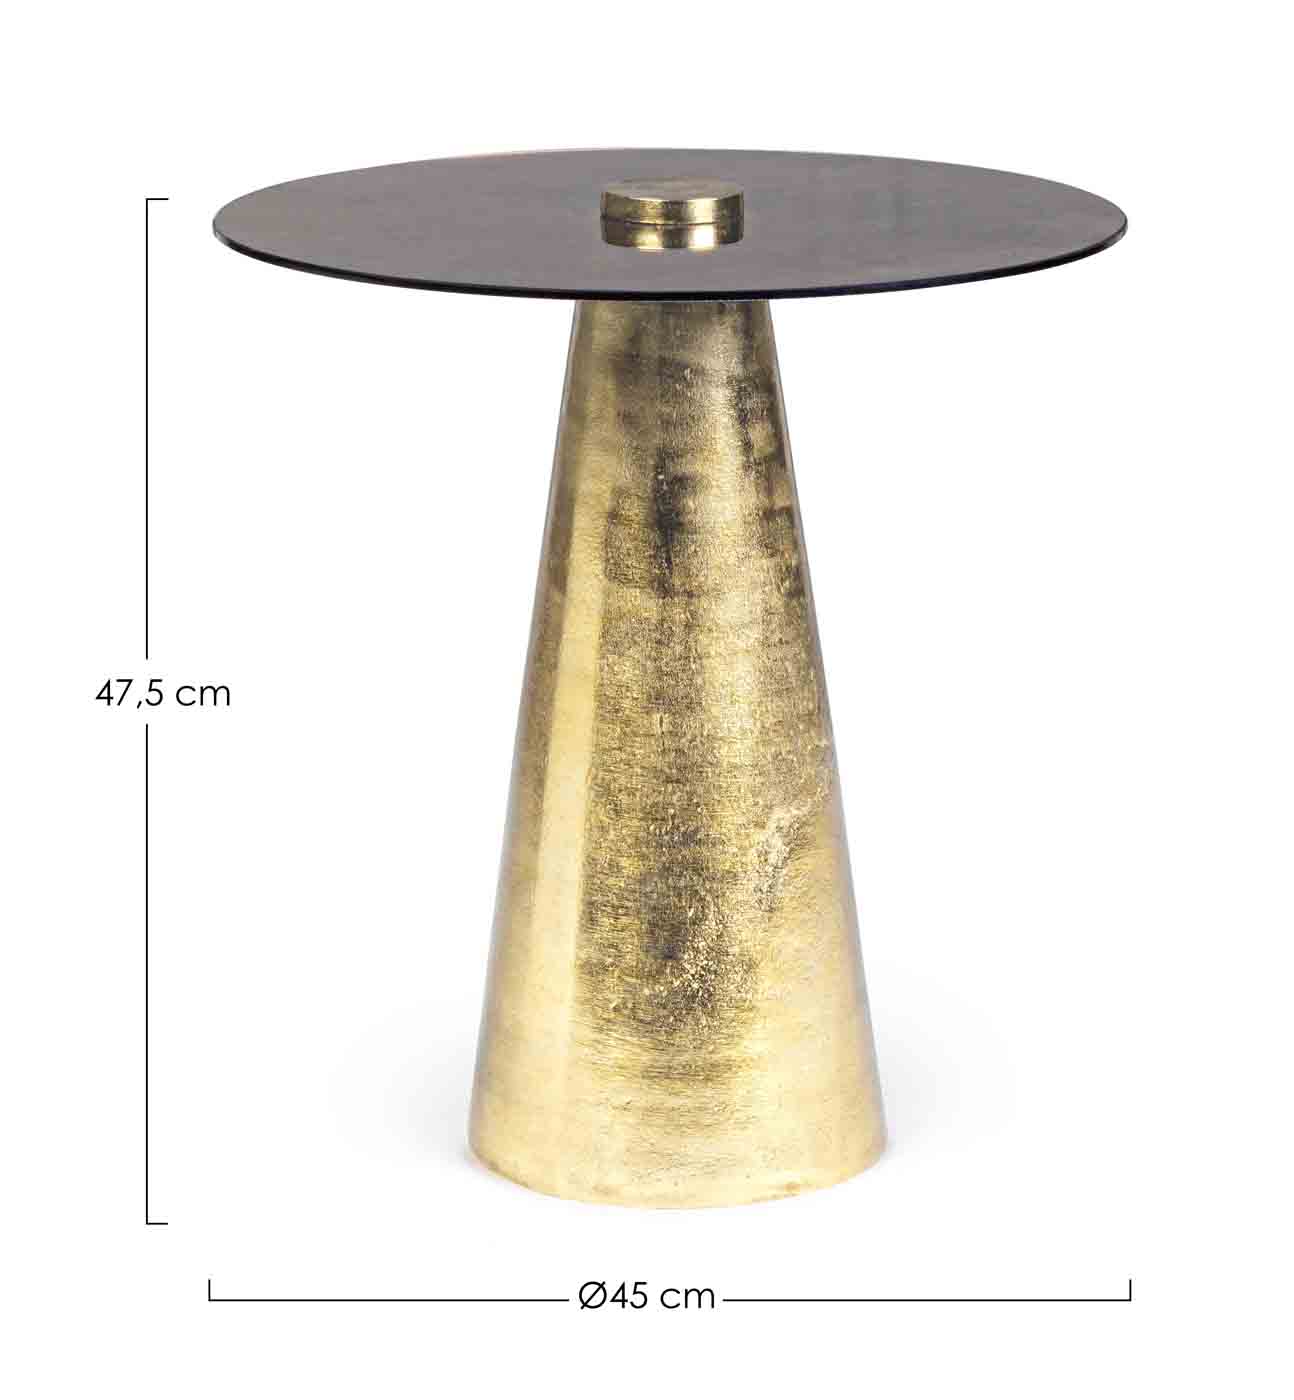 Der Beistelltisch Dinpal überzeugt mit seinem modernen Design. Gefertigt wurde der Tisch aus Metall, welches eine Feinbearbeitung aus Nickel erhalten hat. Die Tischplatte ist aus Glas.